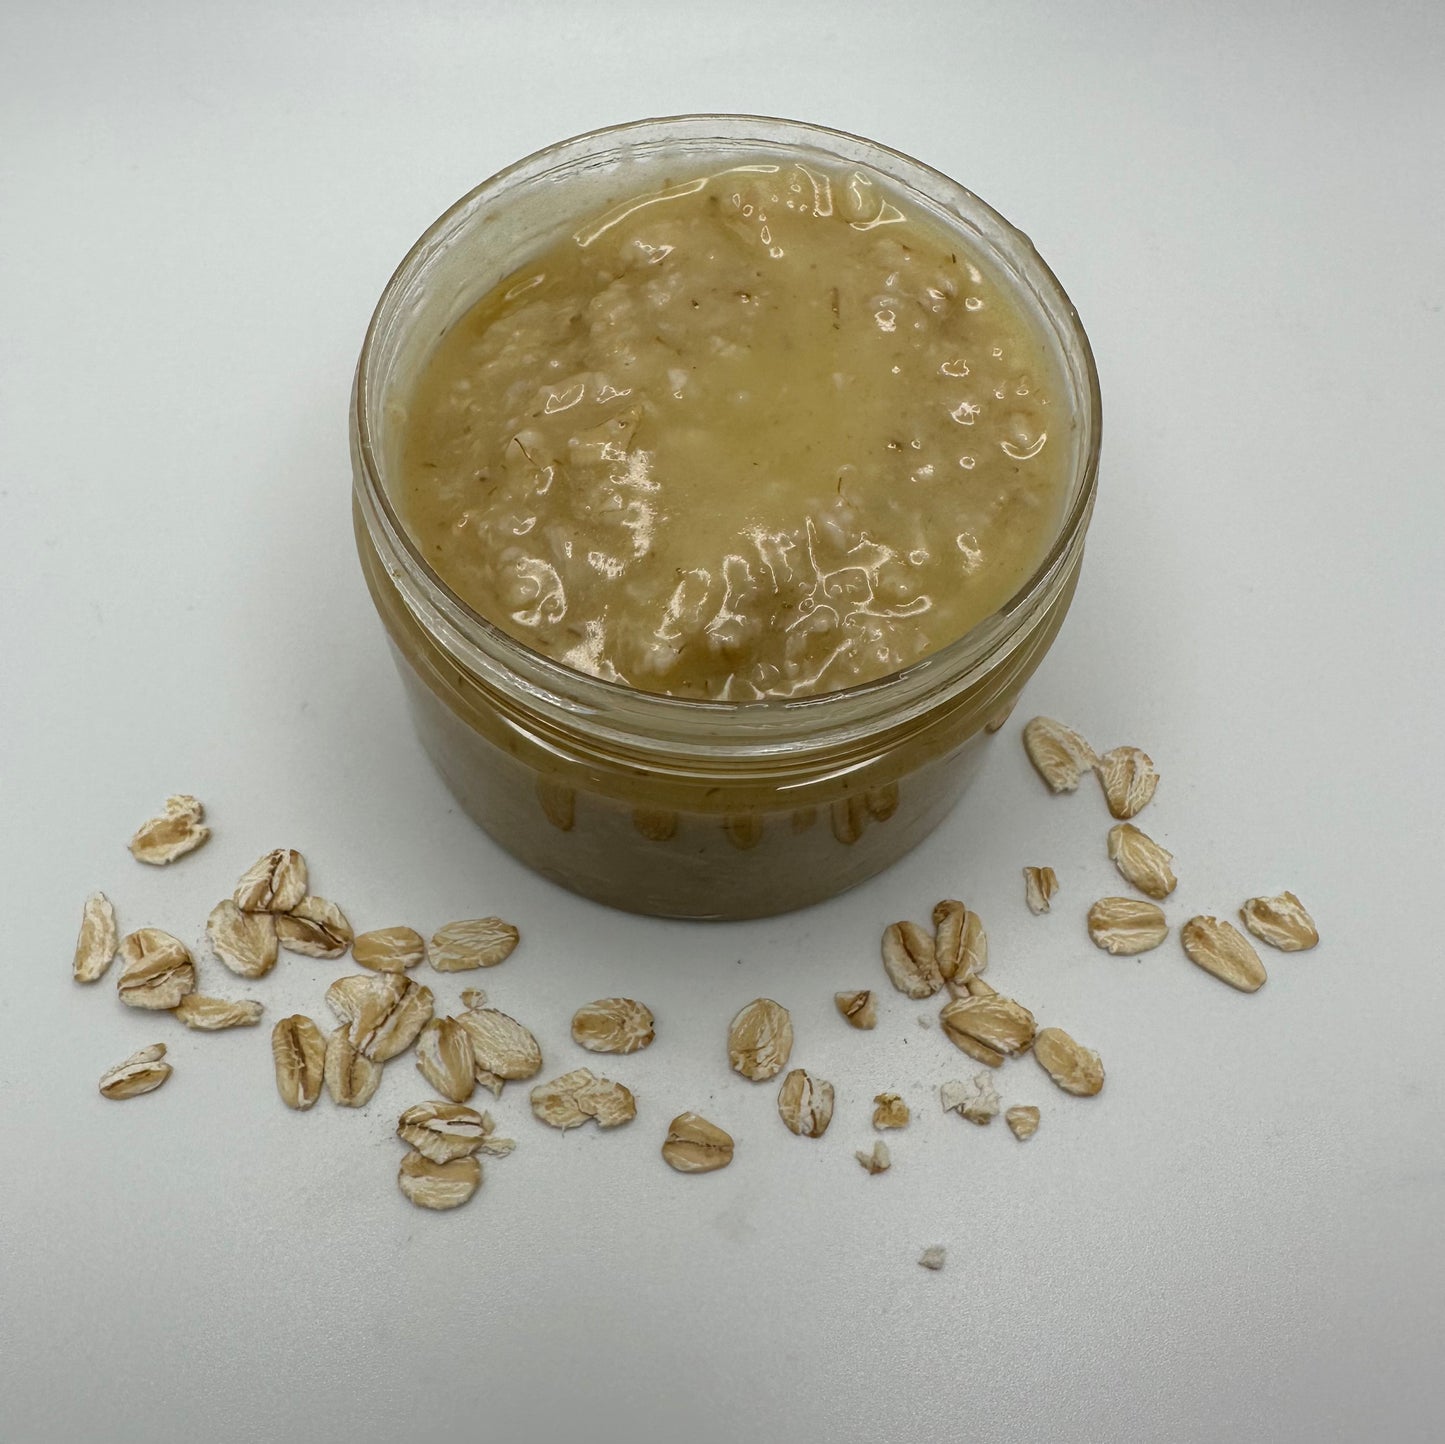 Oatmeal & Honey: Face Mask for Oily Skin